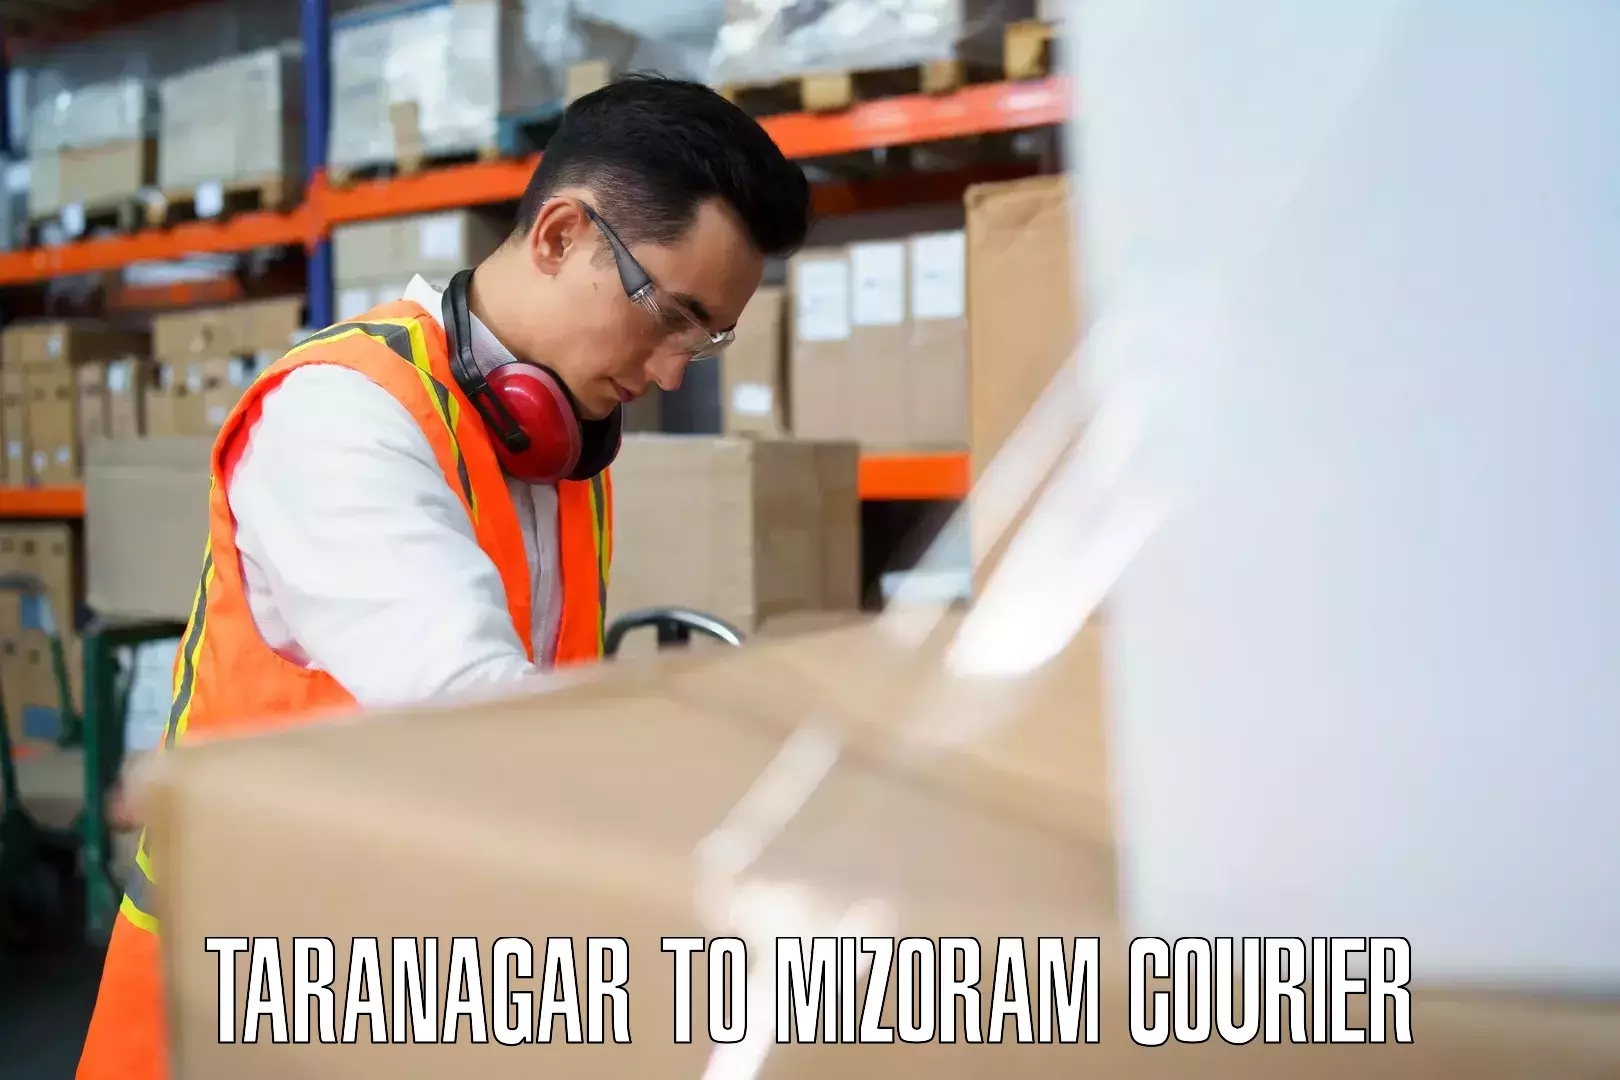 Luggage shipment tracking Taranagar to Kolasib